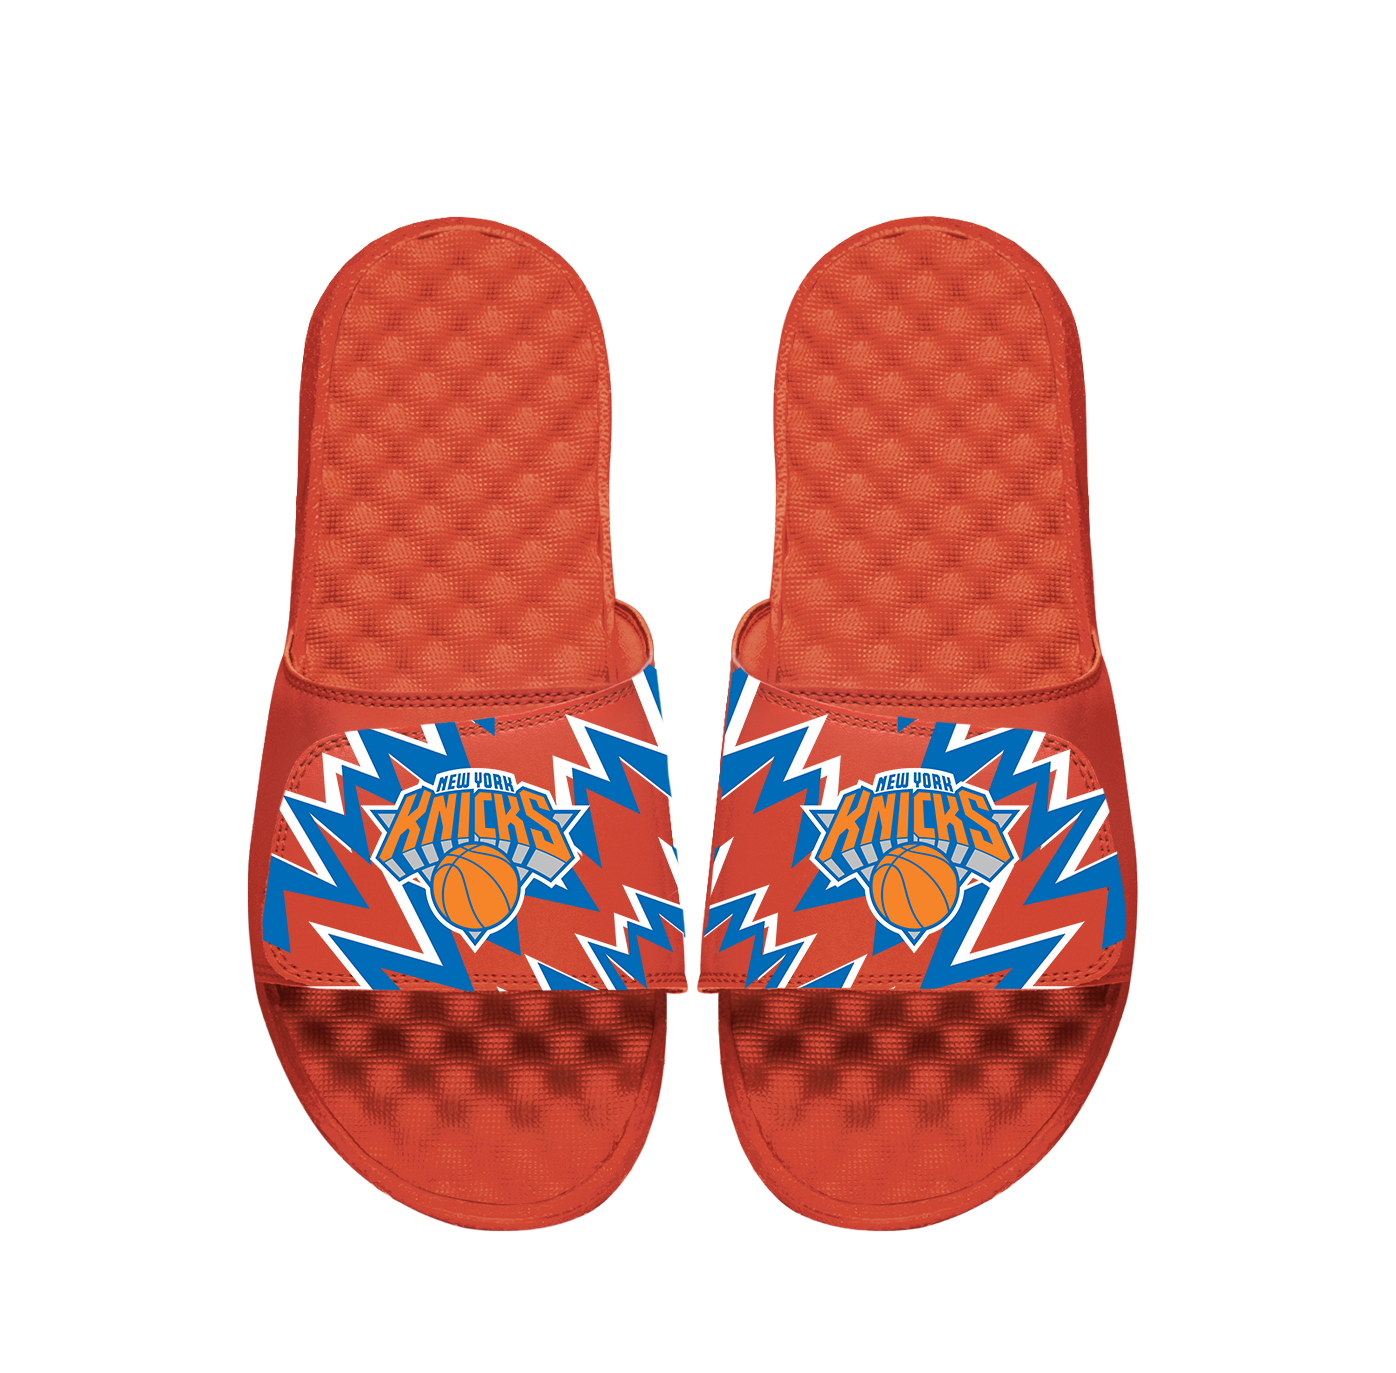 Knicks High Energy Slides